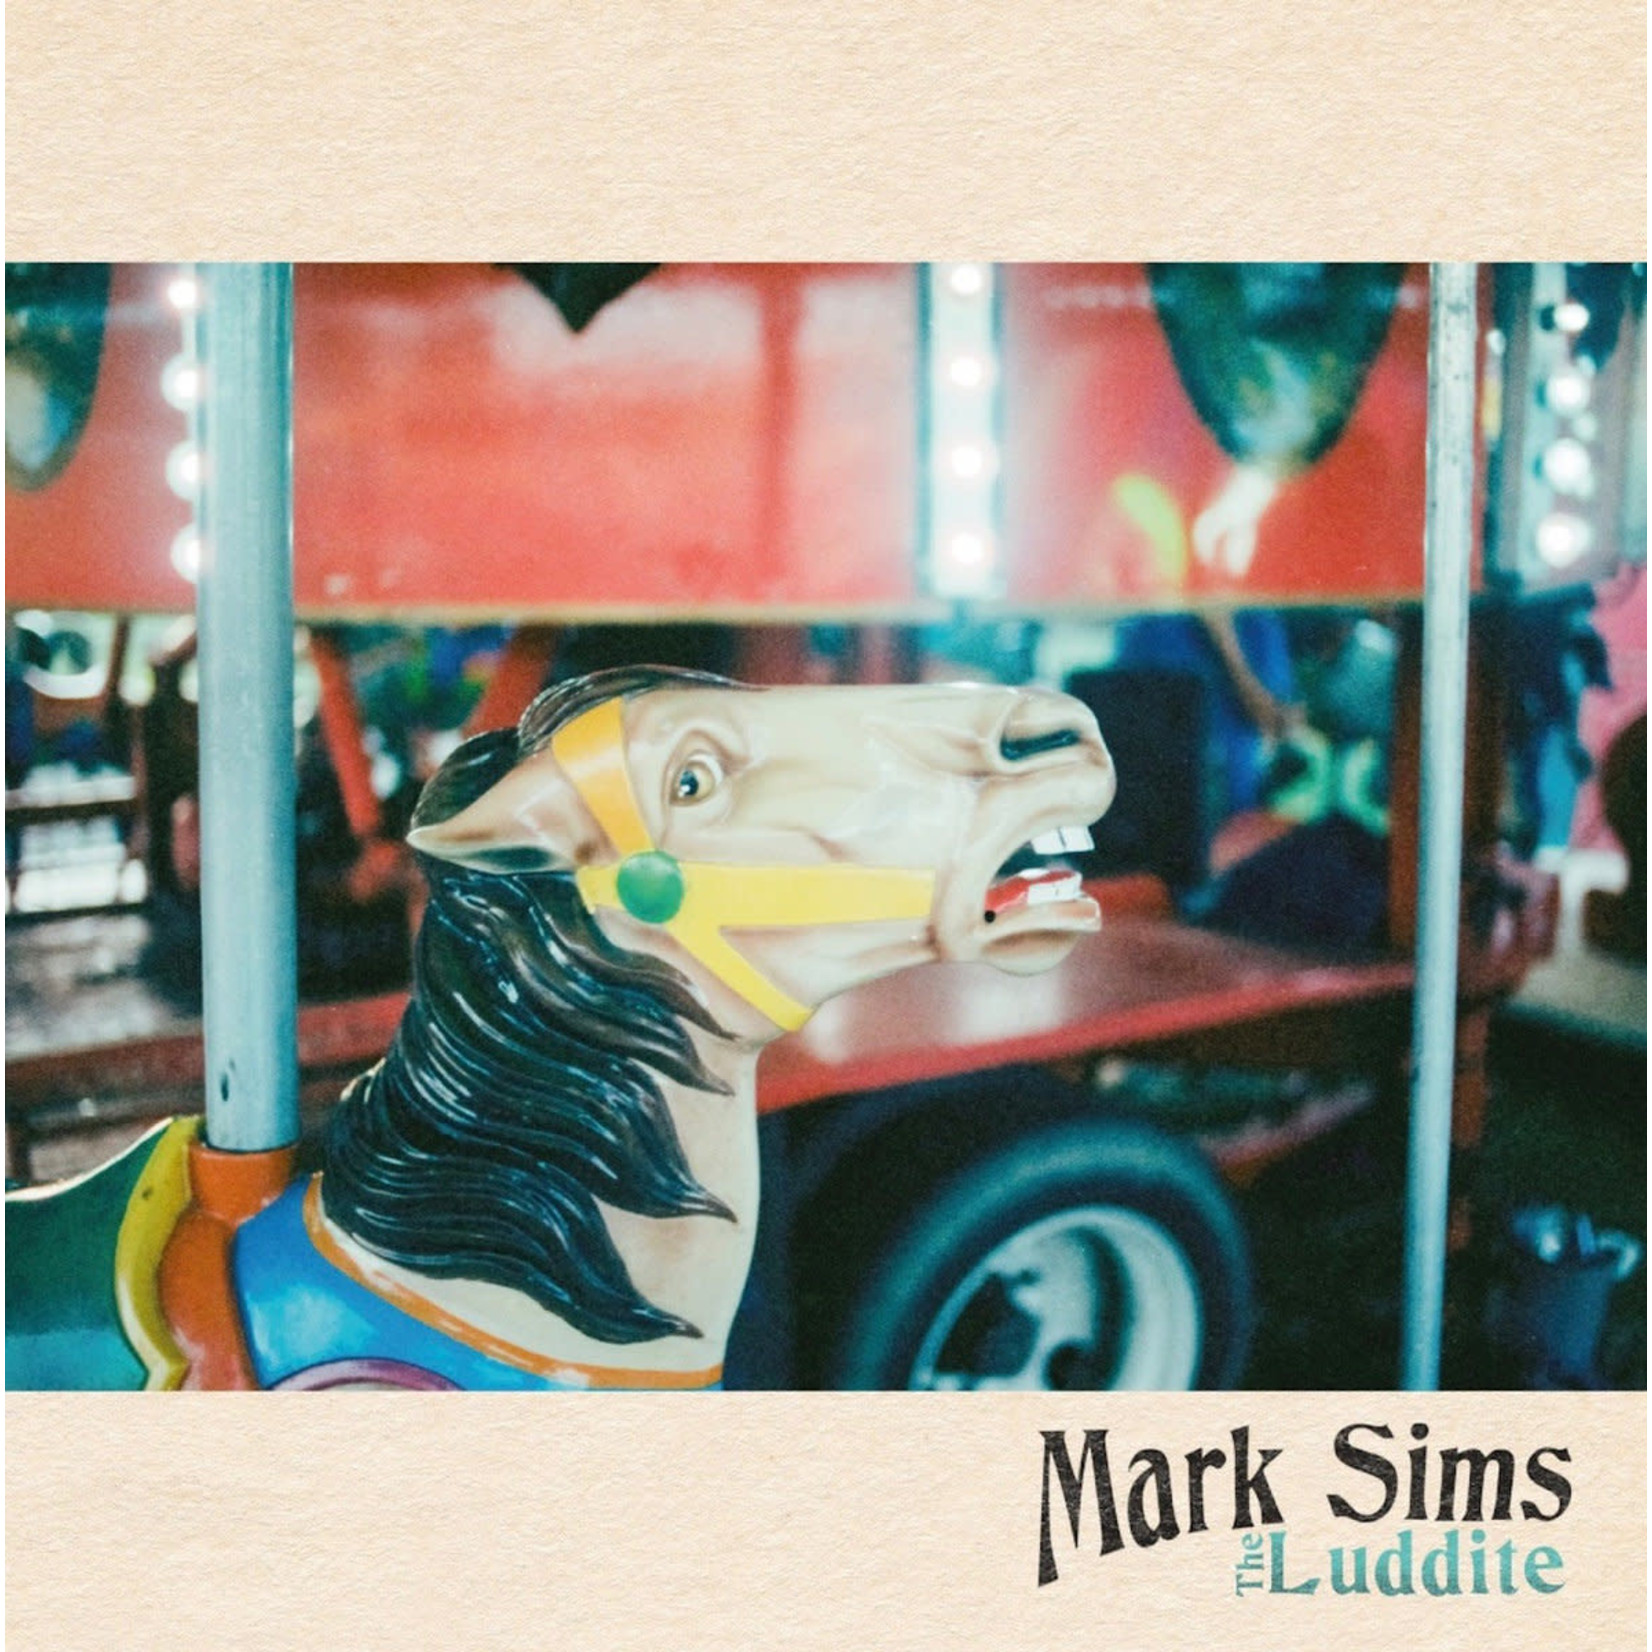 Mark Sims - The Luddite (LP)